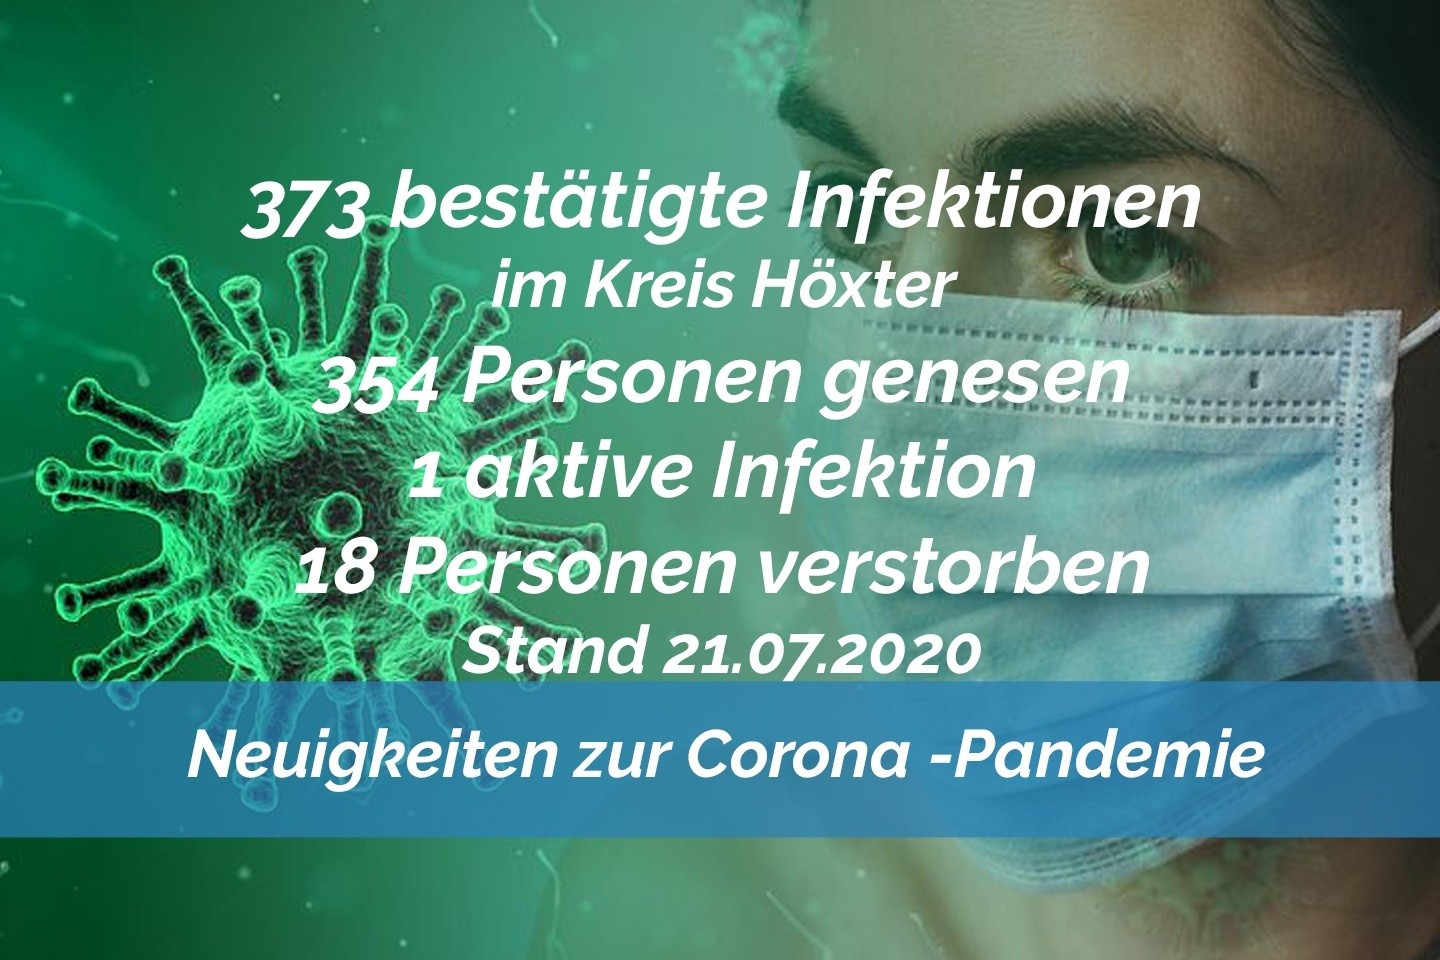 Update vom 21. Juli: 373 bestätigte Infektionen mit dem neuen Coronavirus im Kreis Höxter